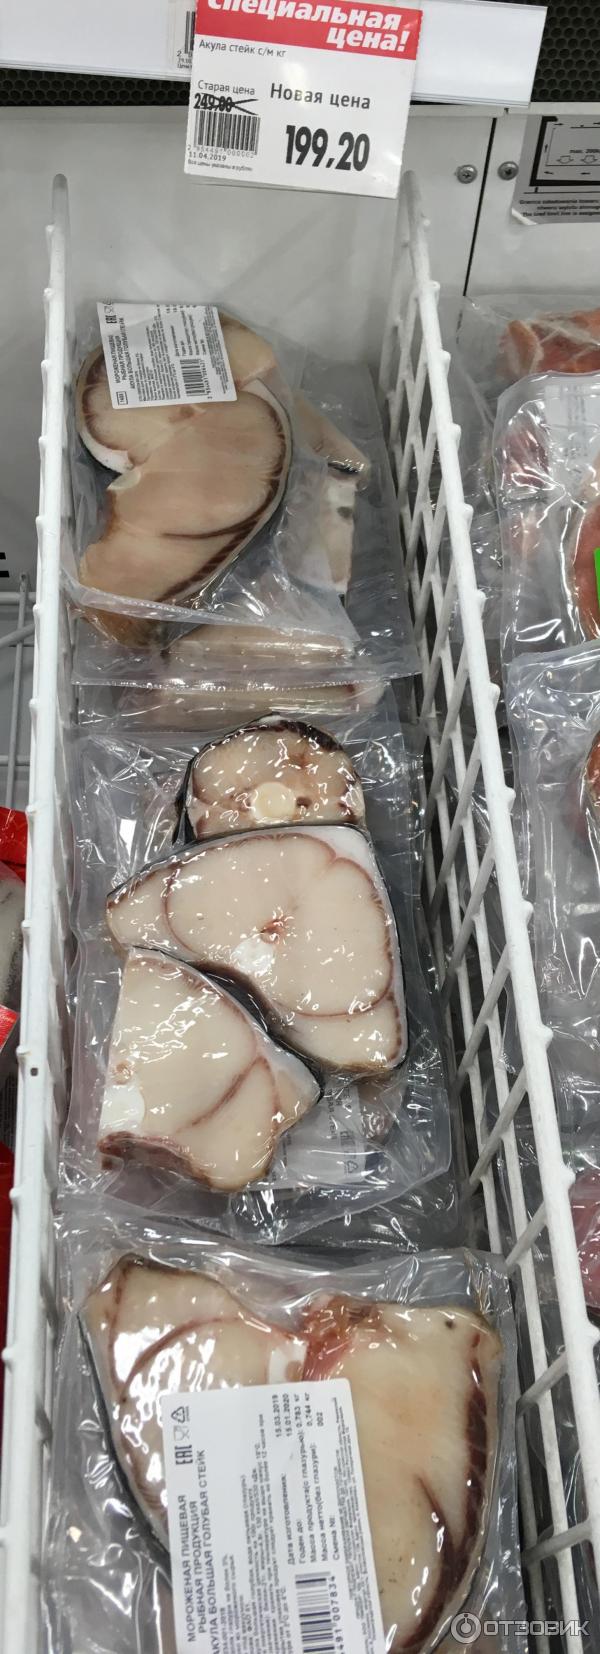 Жители Ленобласти заклеймили чиновника, показавшего в Инстаграм деликатес из своего холодильника